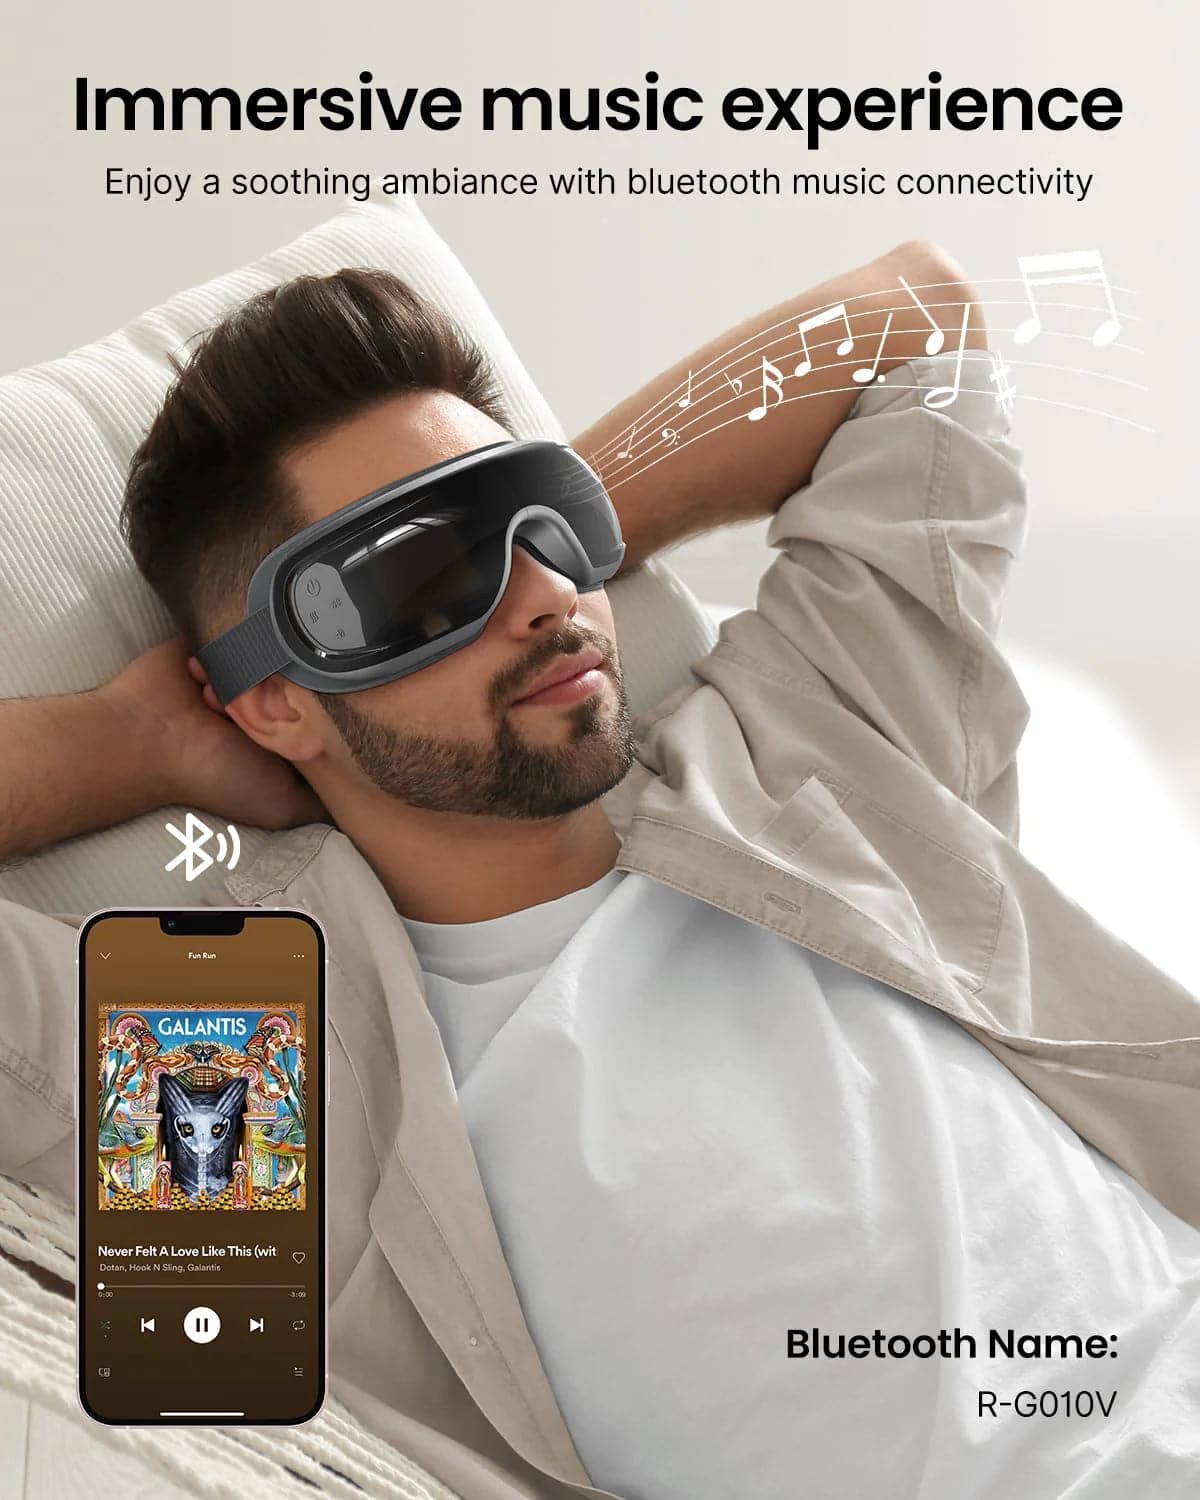 Ein Mann entspannt auf einem weißen Sofa und trägt das Augenmassagegerät Eyeris 3 von Renpho DE, gekoppelt mit einem Telefon, auf dessen Bildschirm Musik angezeigt wird. Der Text wirbt für ein intensives Musikerlebnis mit Bluetooth-Konnektivität.